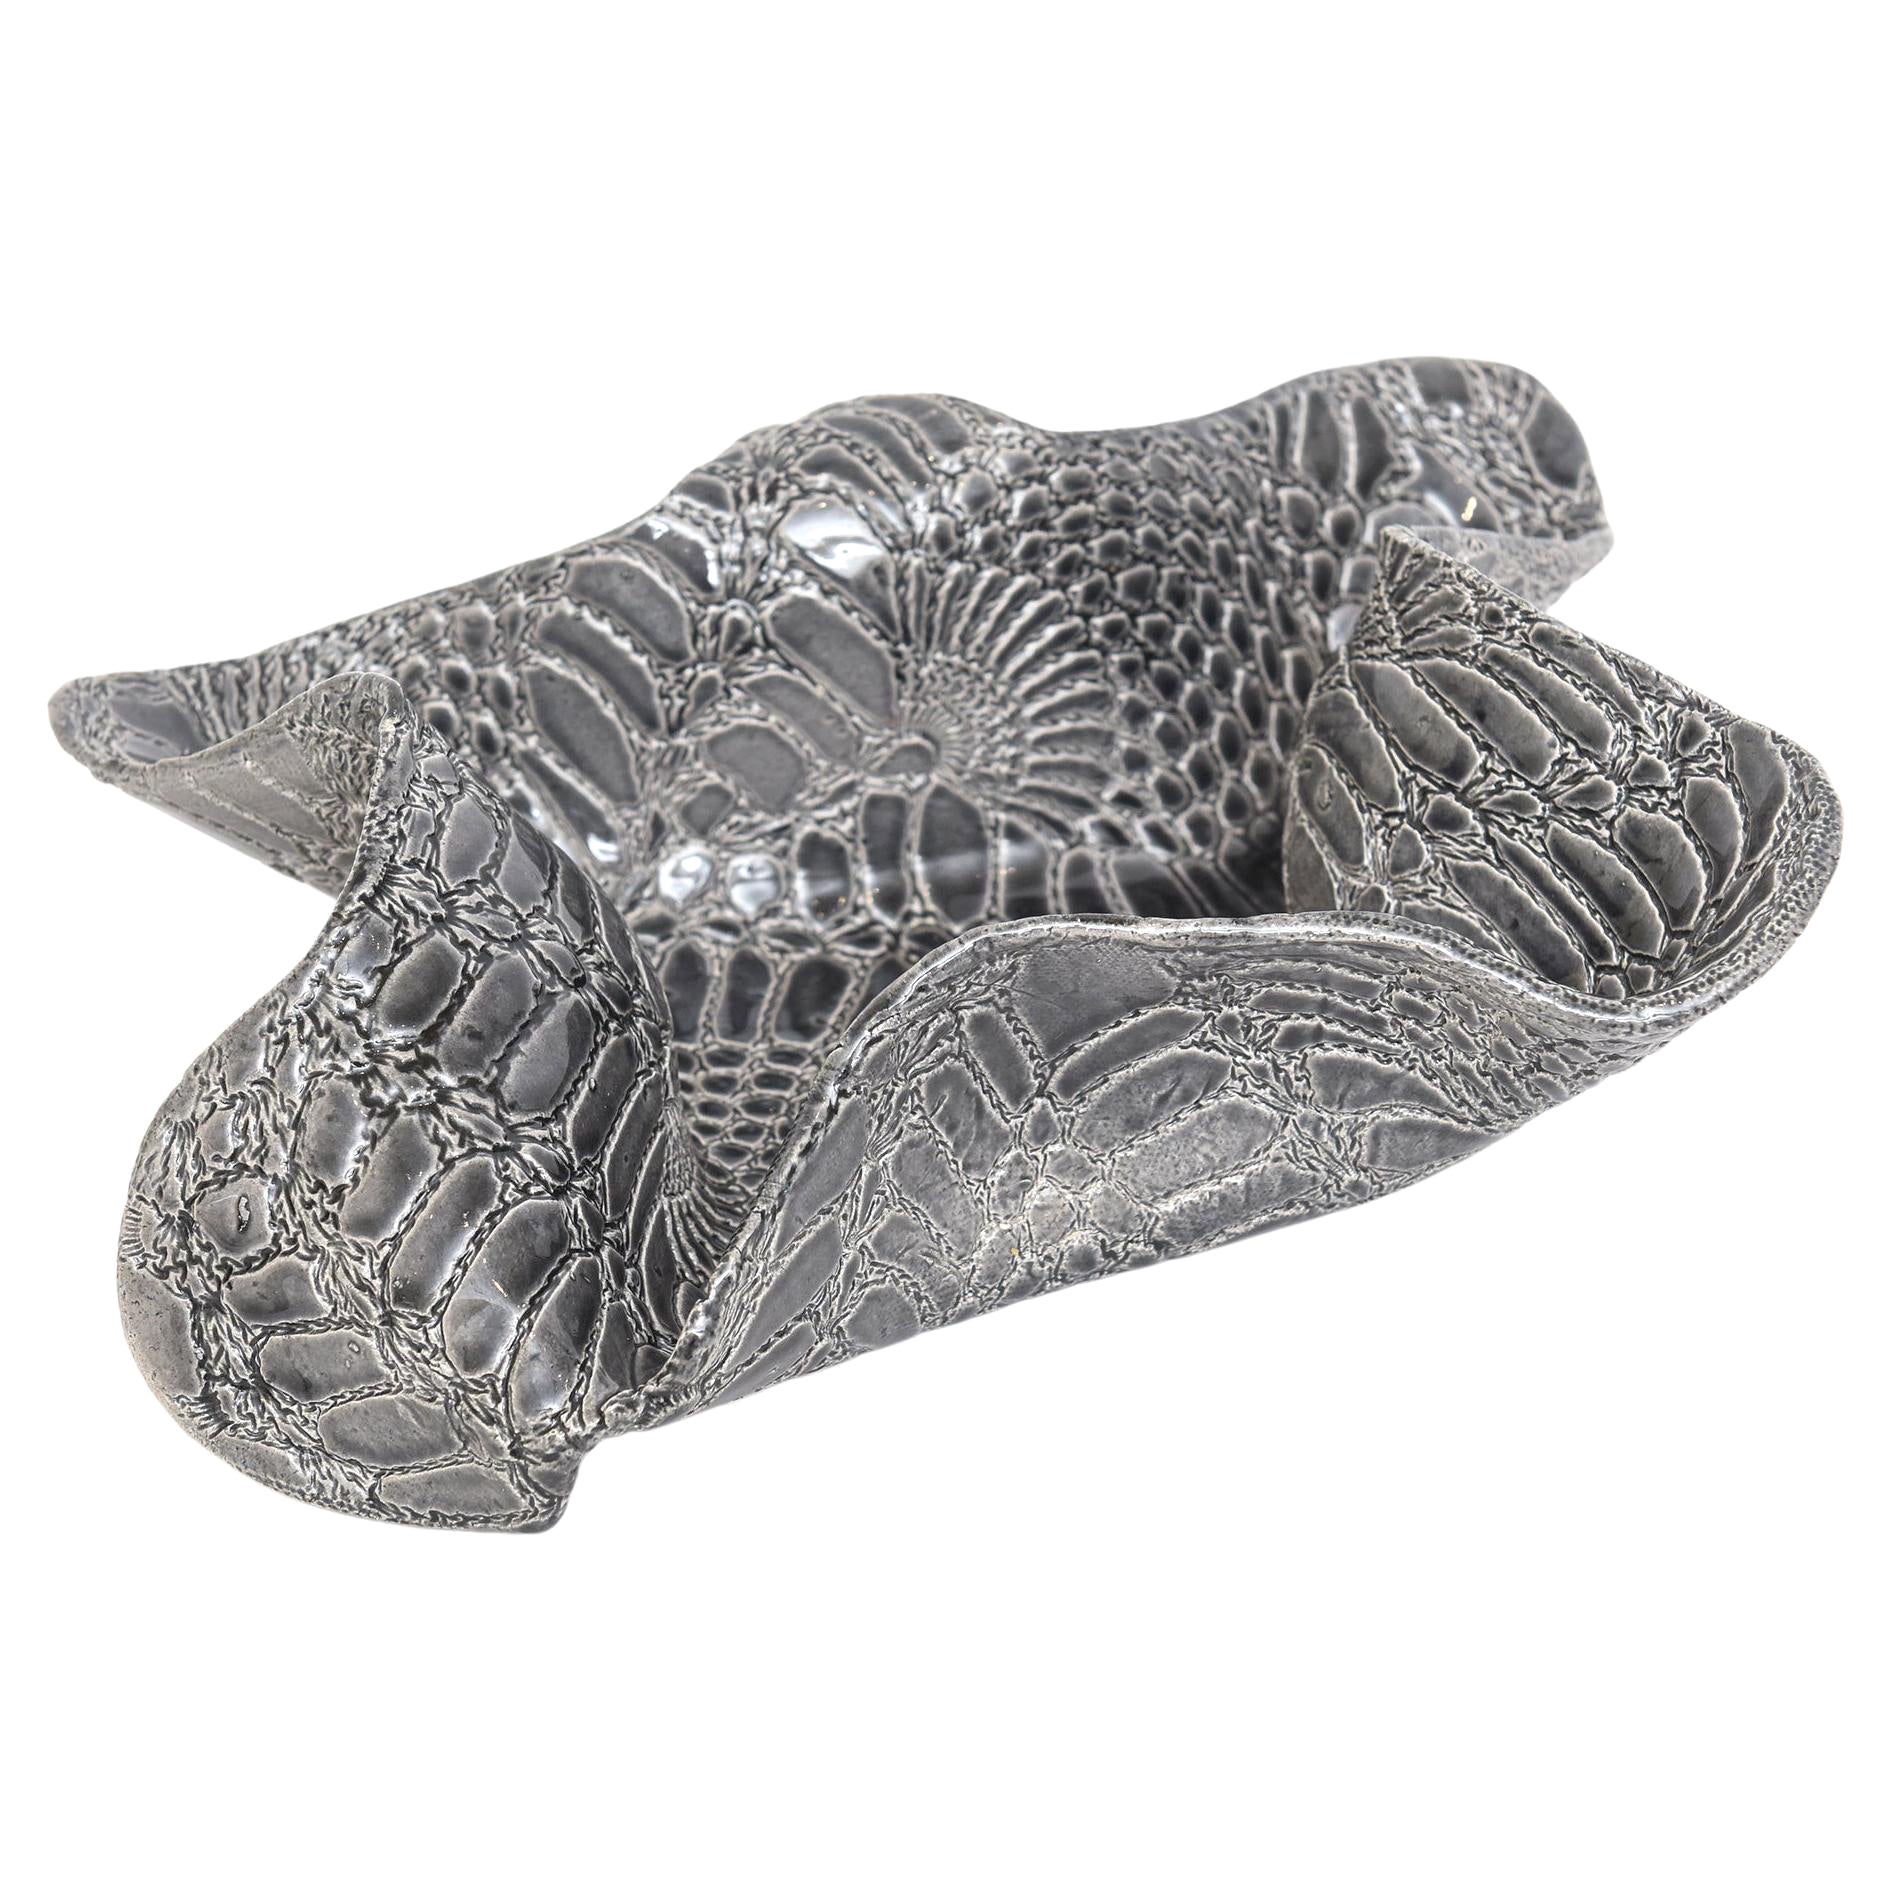 Keramik Texturierte Biomorphe skulpturale Schale mit Schlangenhautmuster Grau Weiß